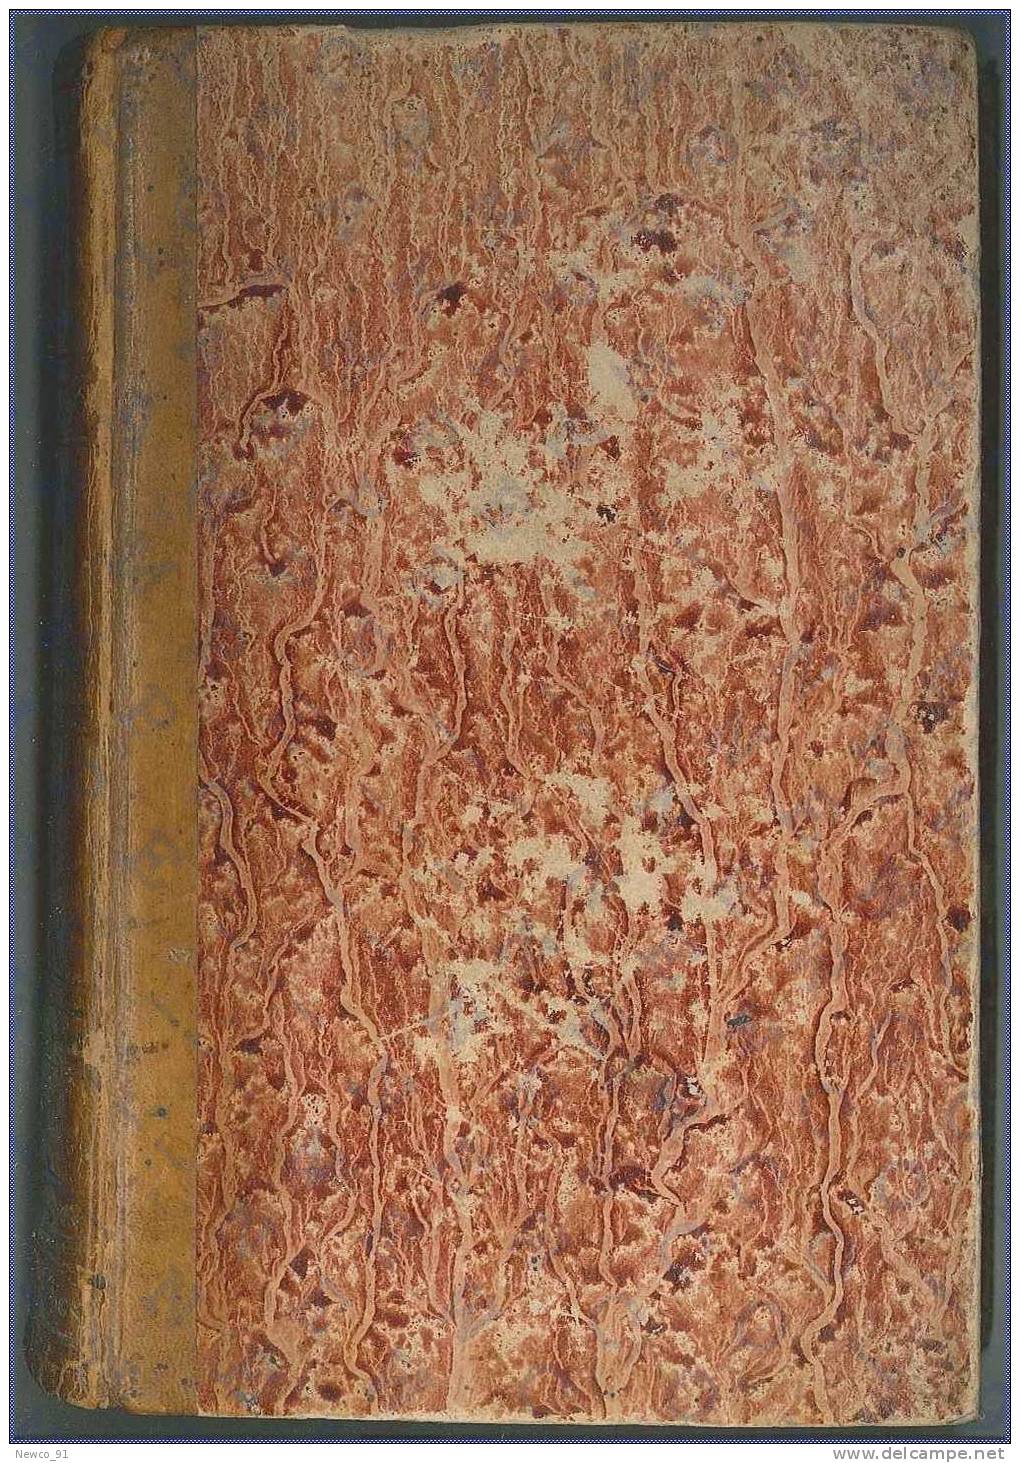 DIZIONARIO ITALIANO - FRANCESE - Autore: CORMON E MANNI - Editore: FRANCESCO PAGNONI MILANO - 1874 - Woordenboeken